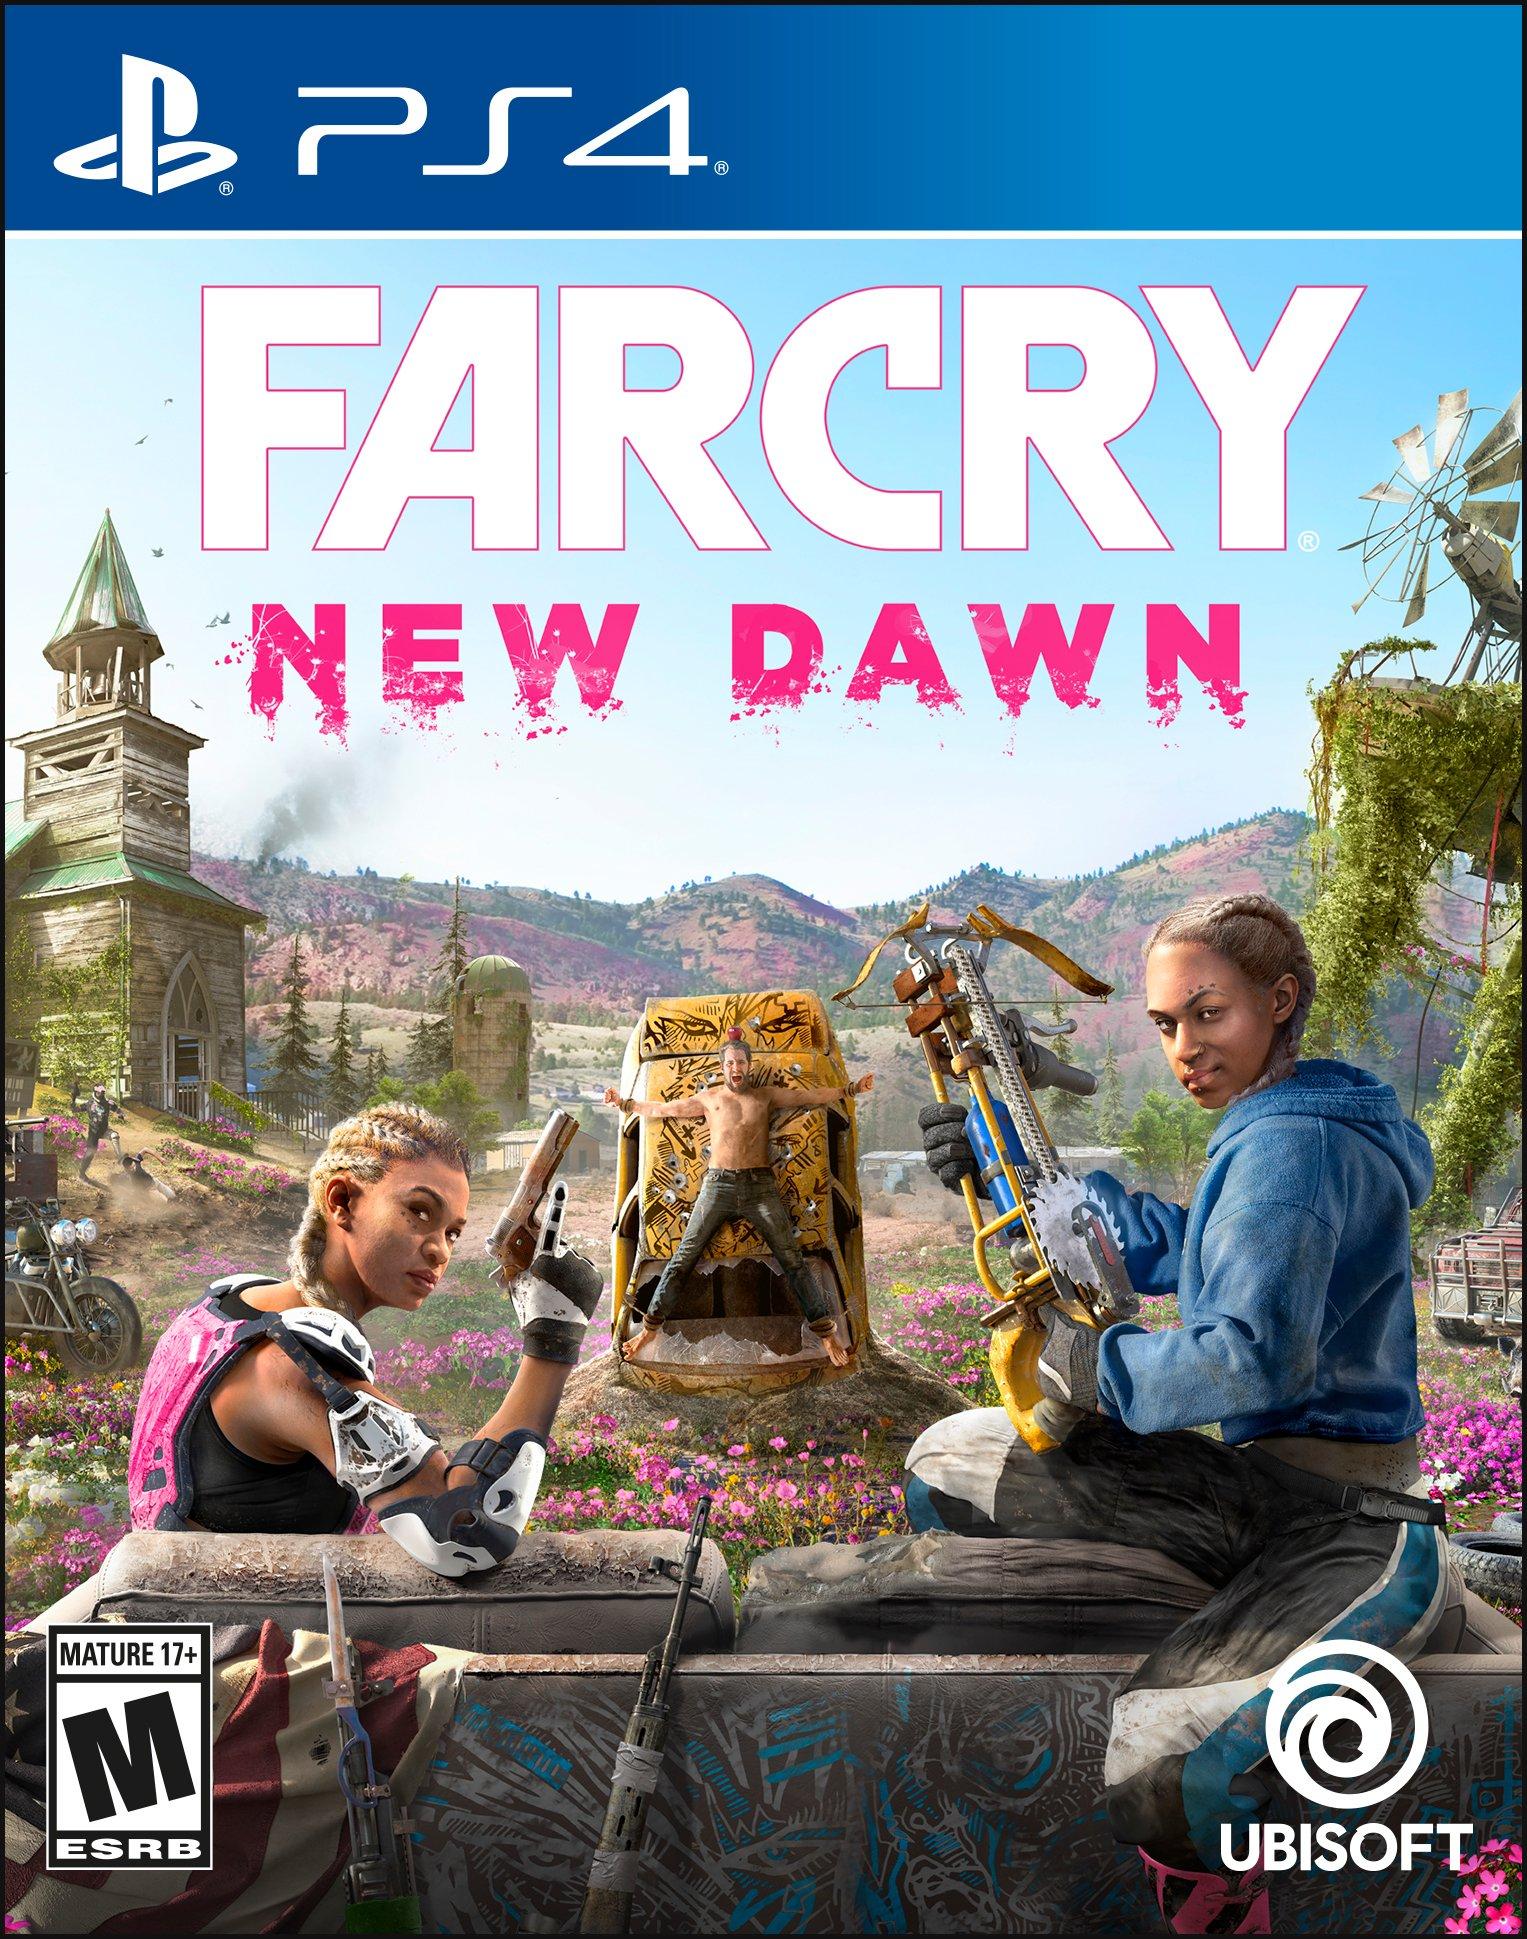 gevinst hagl Nu Far Cry New Dawn - PlayStation 4 | PlayStation 4 | GameStop